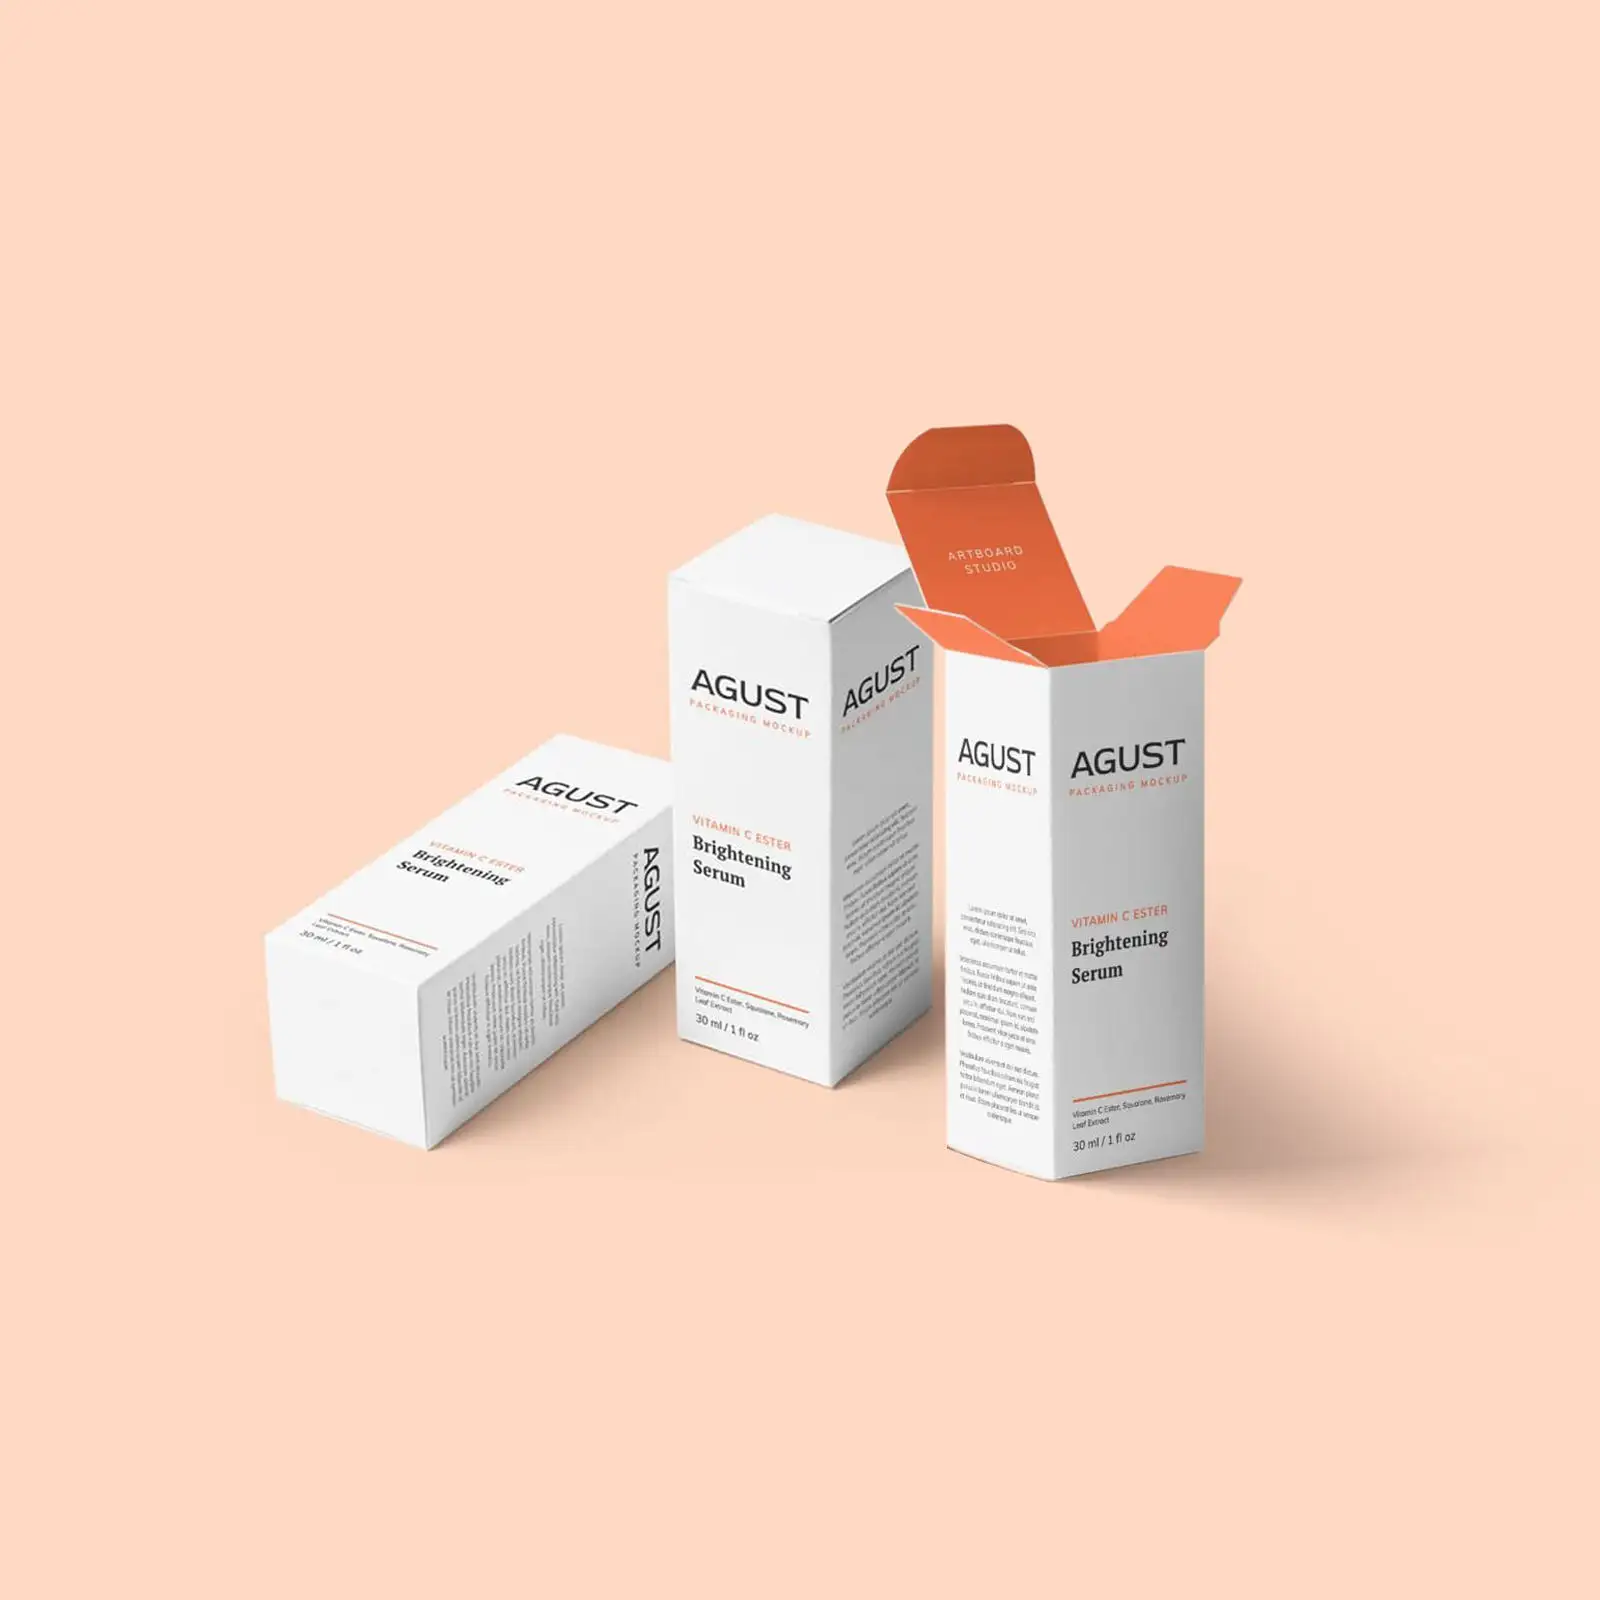 Kotak kemasan botol minyak esensial kertas putih kartu perawatan kulit kosmetik karton cetak kotak atas lipat ramah lingkungan kustom